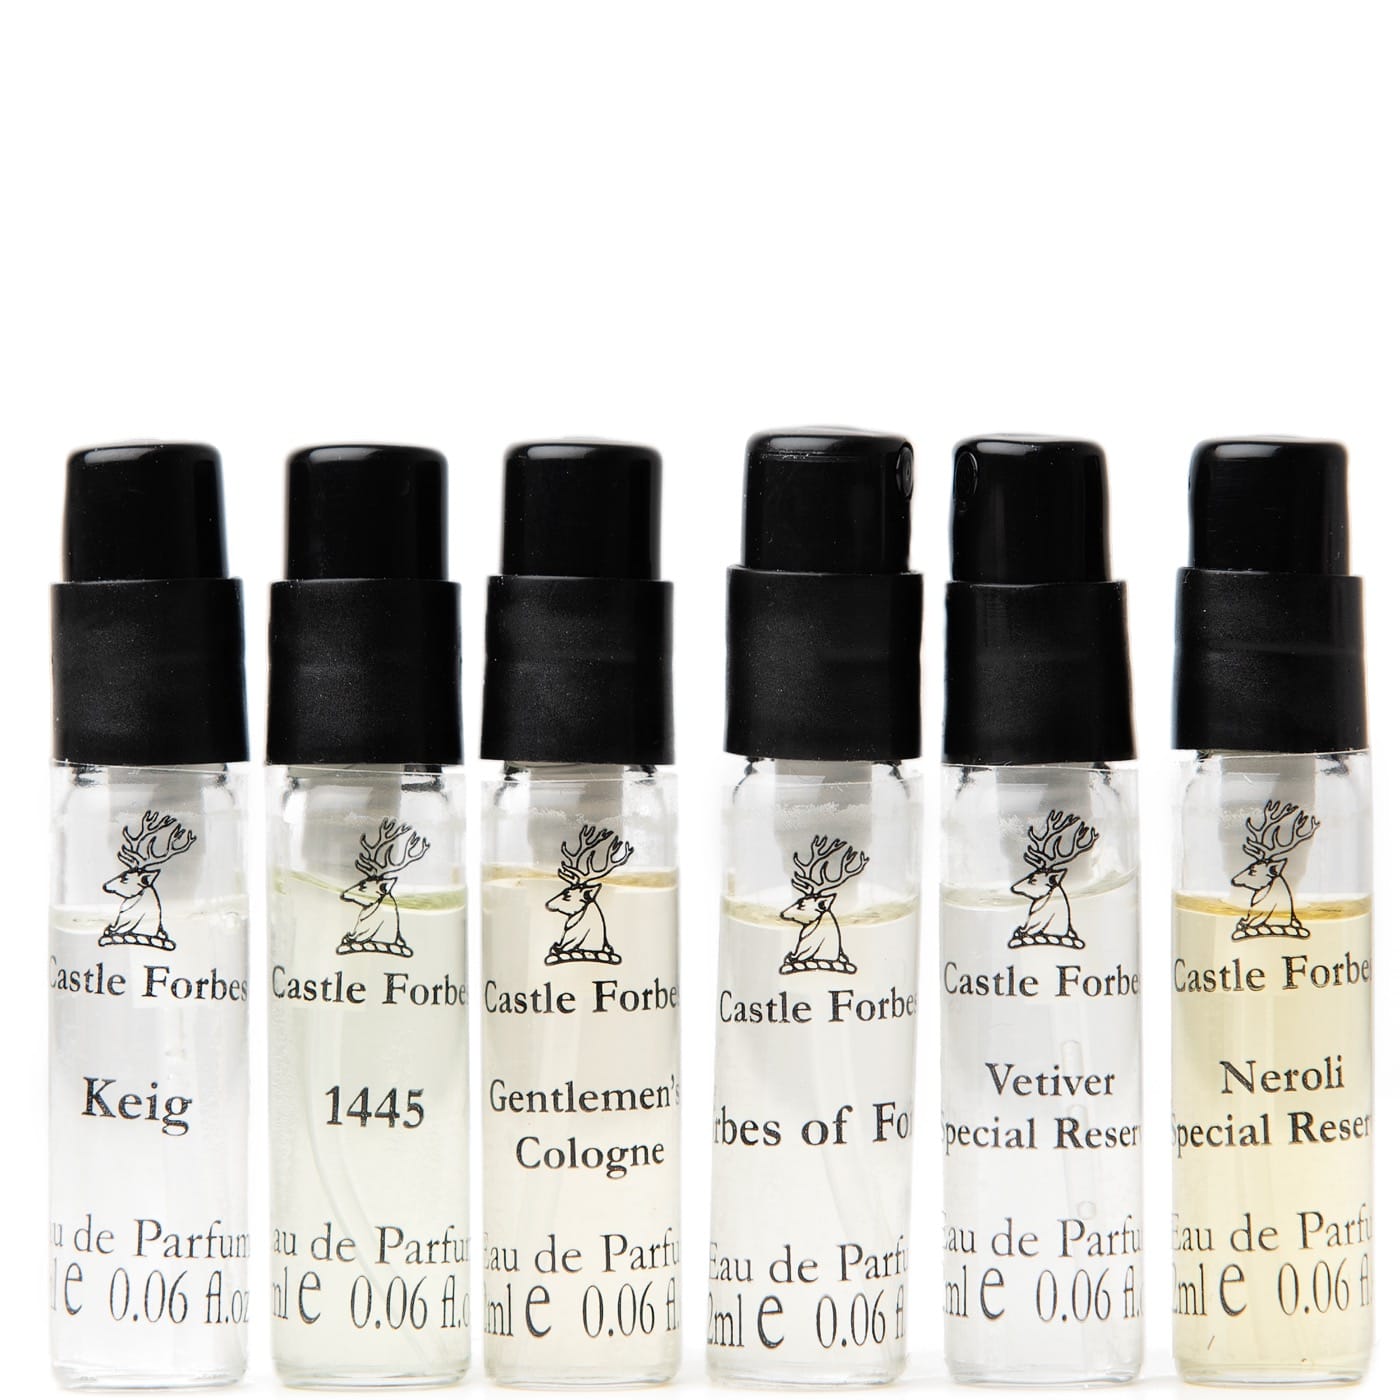 The Fragrance Collection Eau de Parfum discovery set - 6 x 2ml